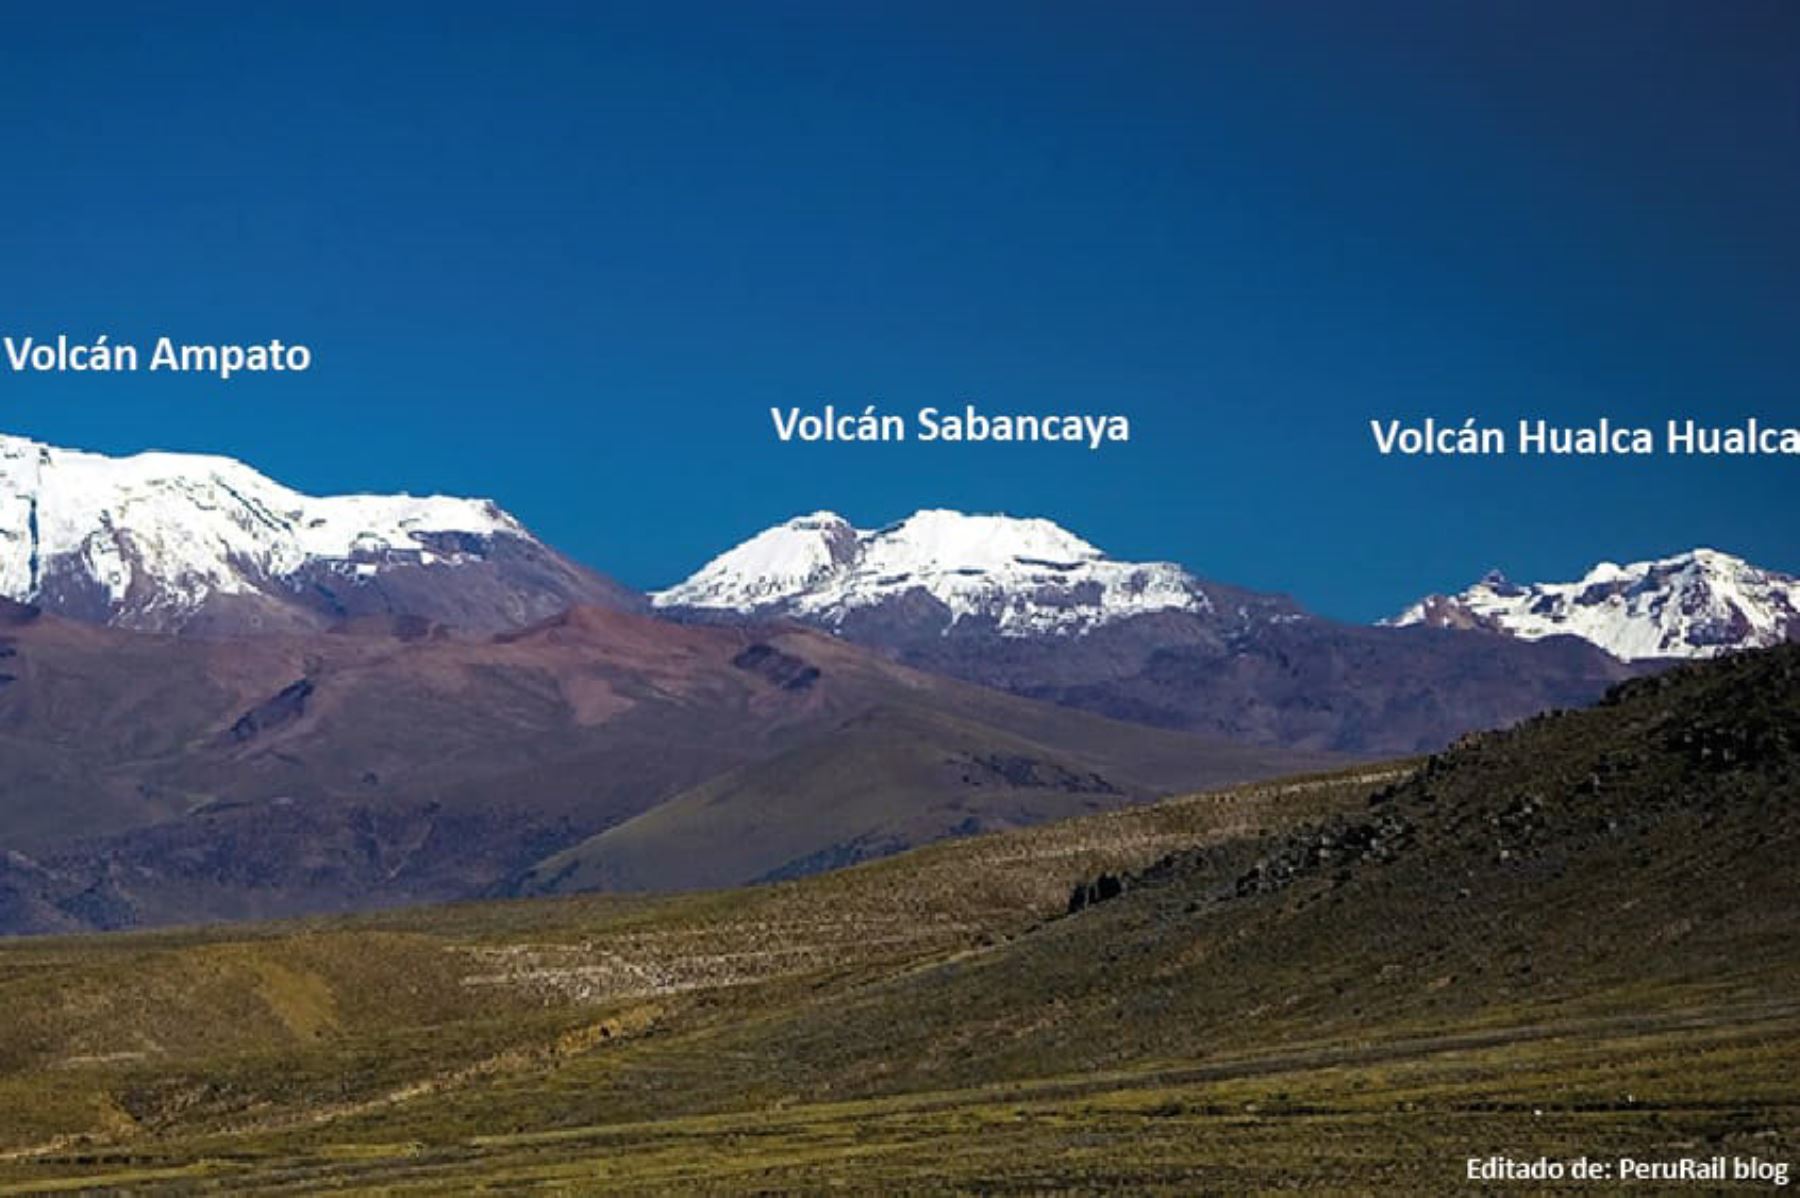 Las fallas geológicas activas controlan el emplazamiento de los volcanes Sabancaya, Ampato y Hualca Hualca. Foto: ANDINA/Ingemmet